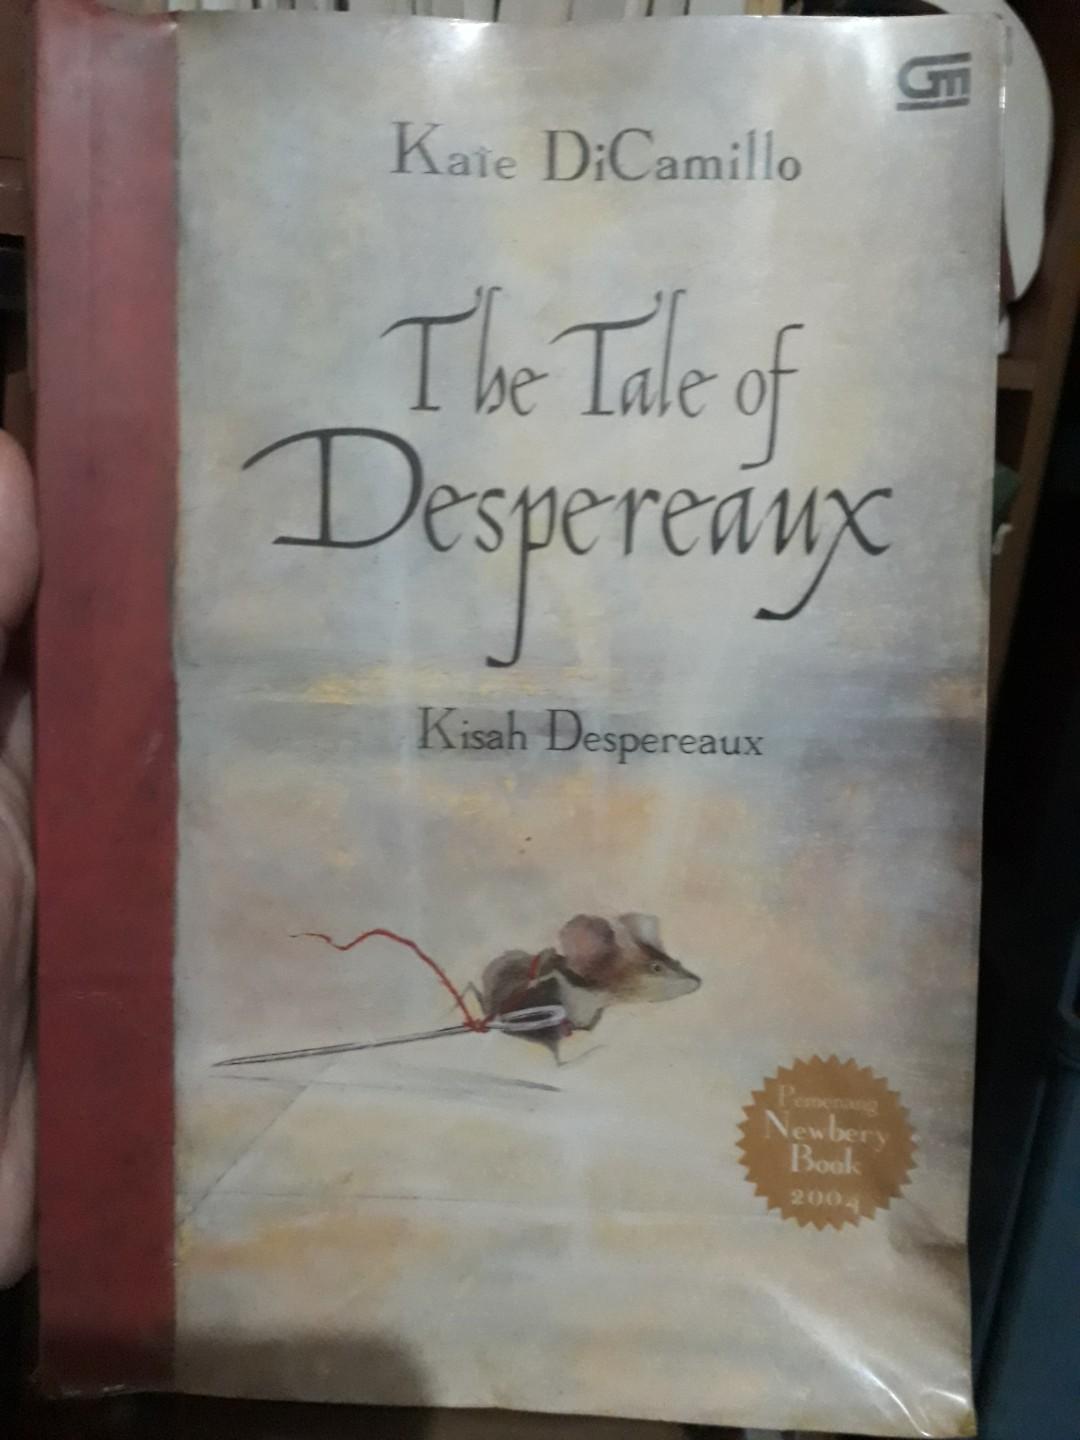 The tale of despereaux :  Kisah Despereaux